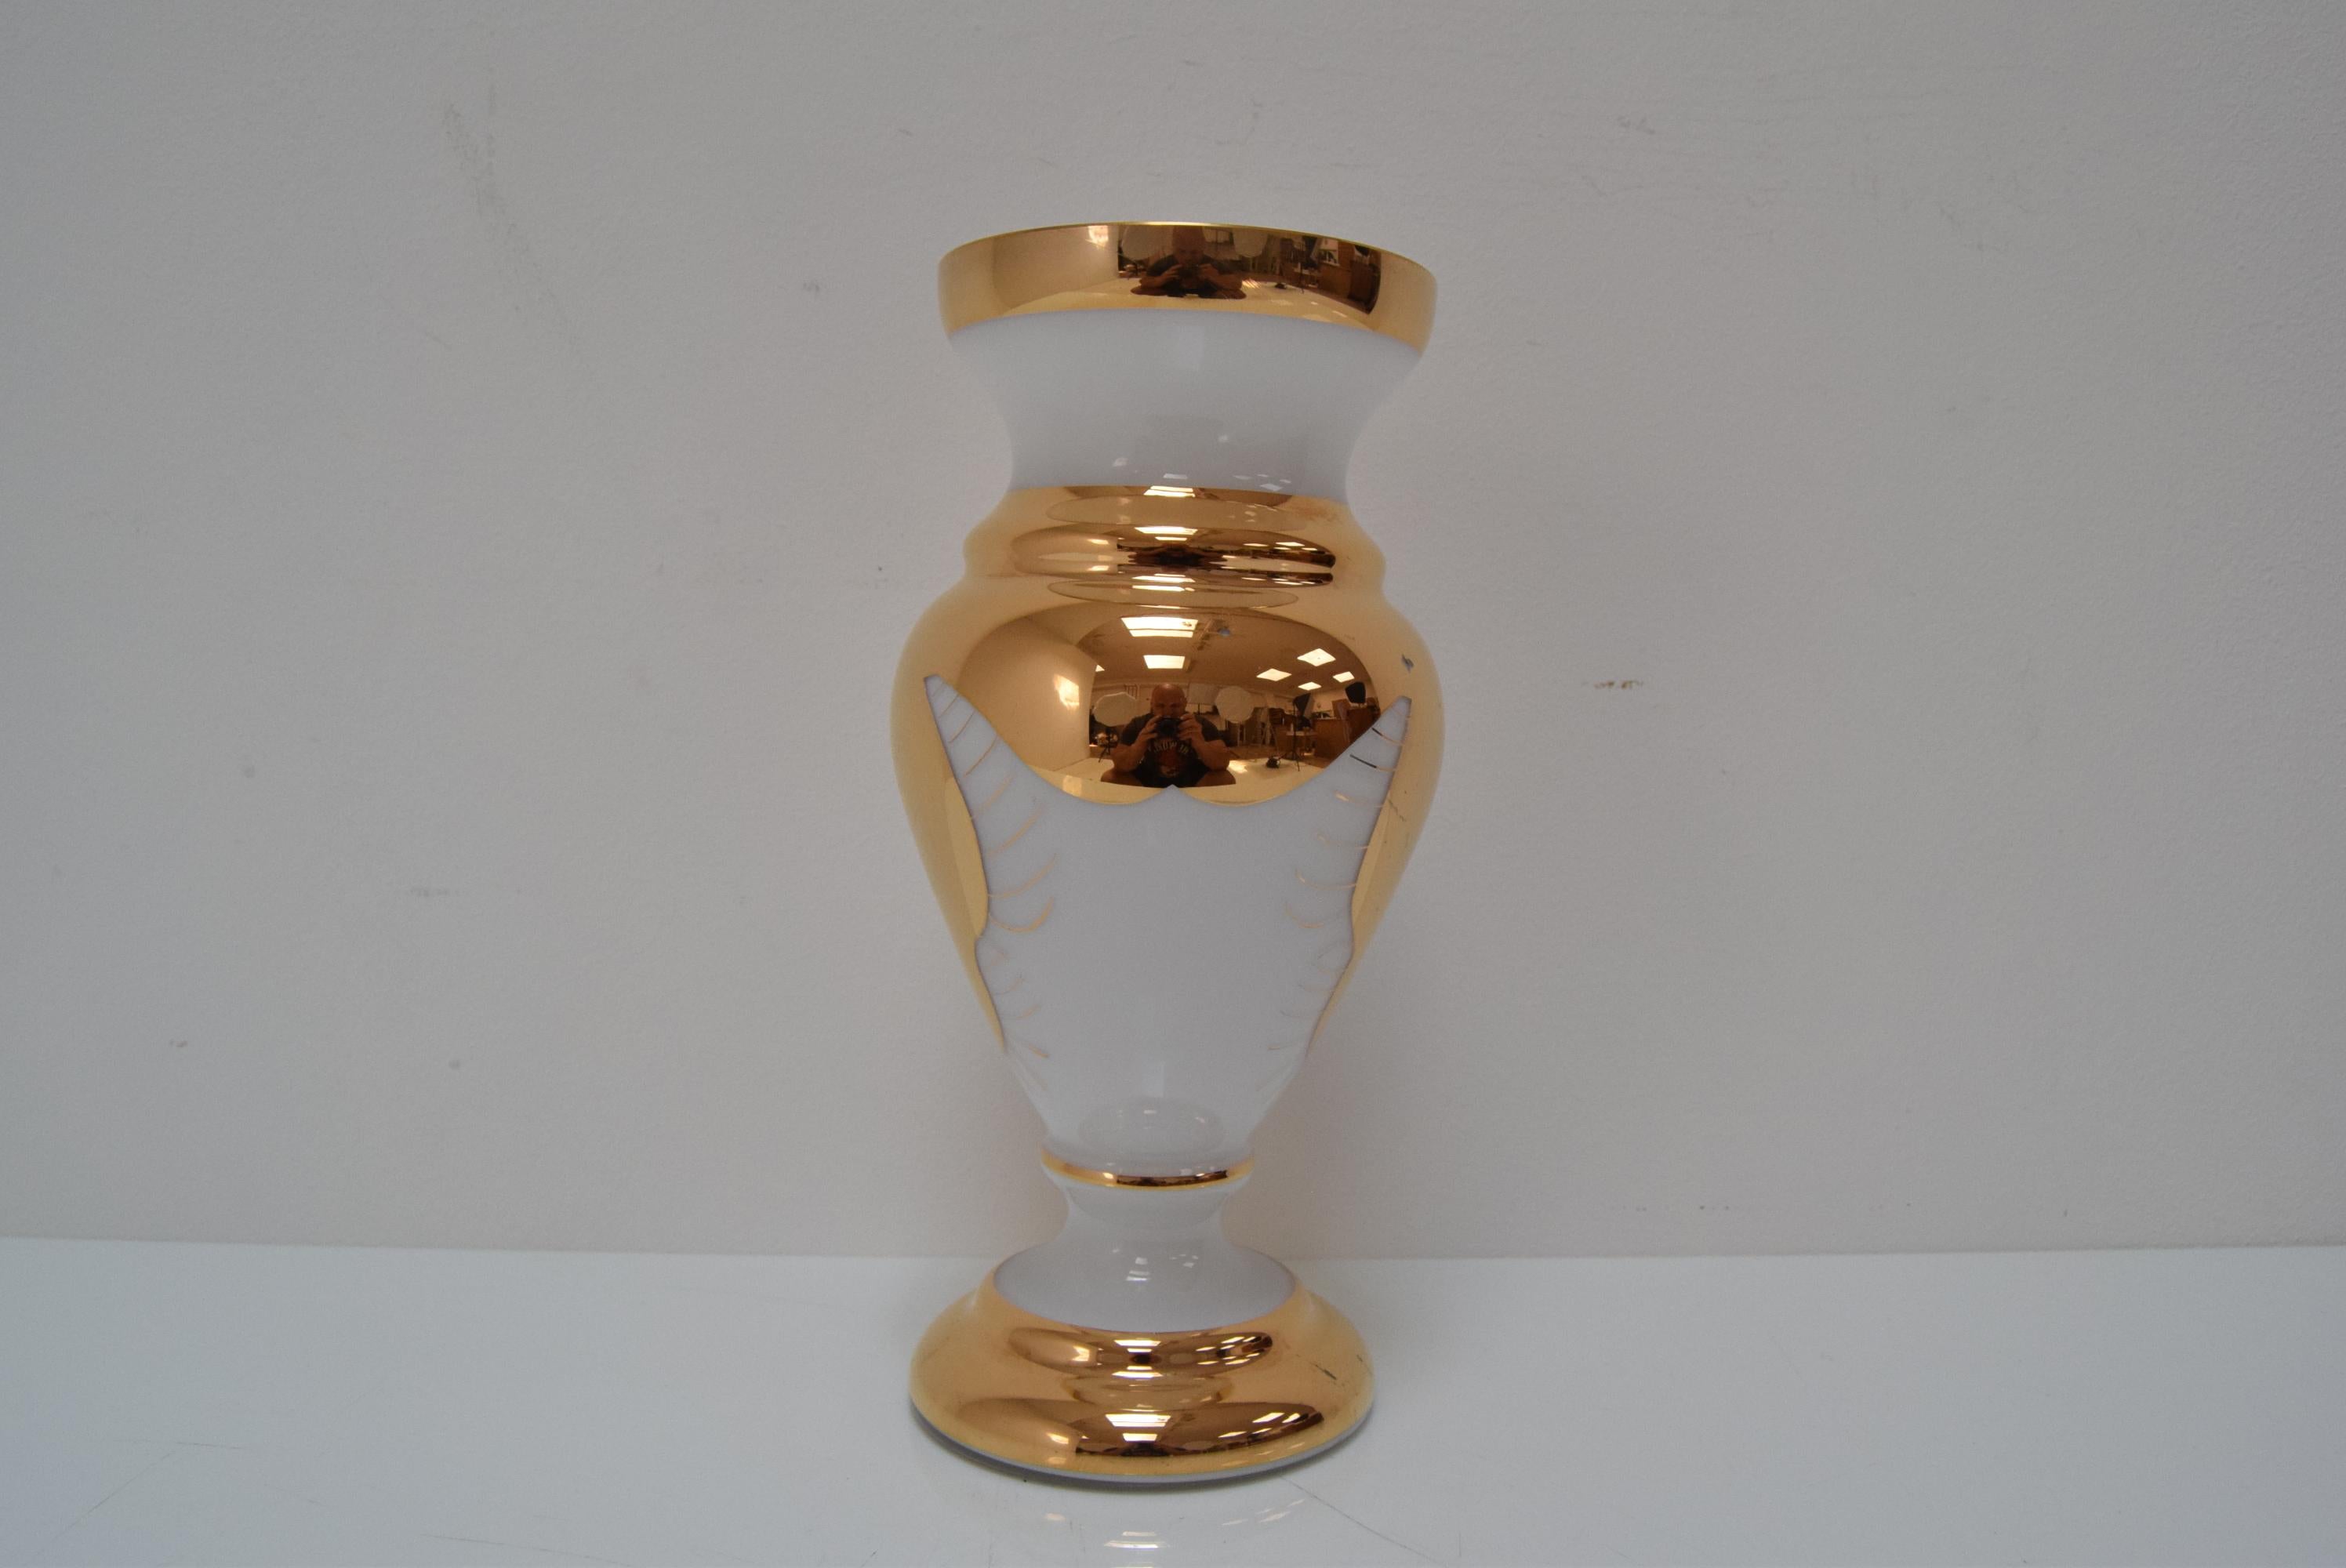 
Fabriqué en Tchécoslovaquie
En verre d'art
Le vase est légèrement tordu
Le vase a des rayures (voir Foto)
Repolissage
Etat original